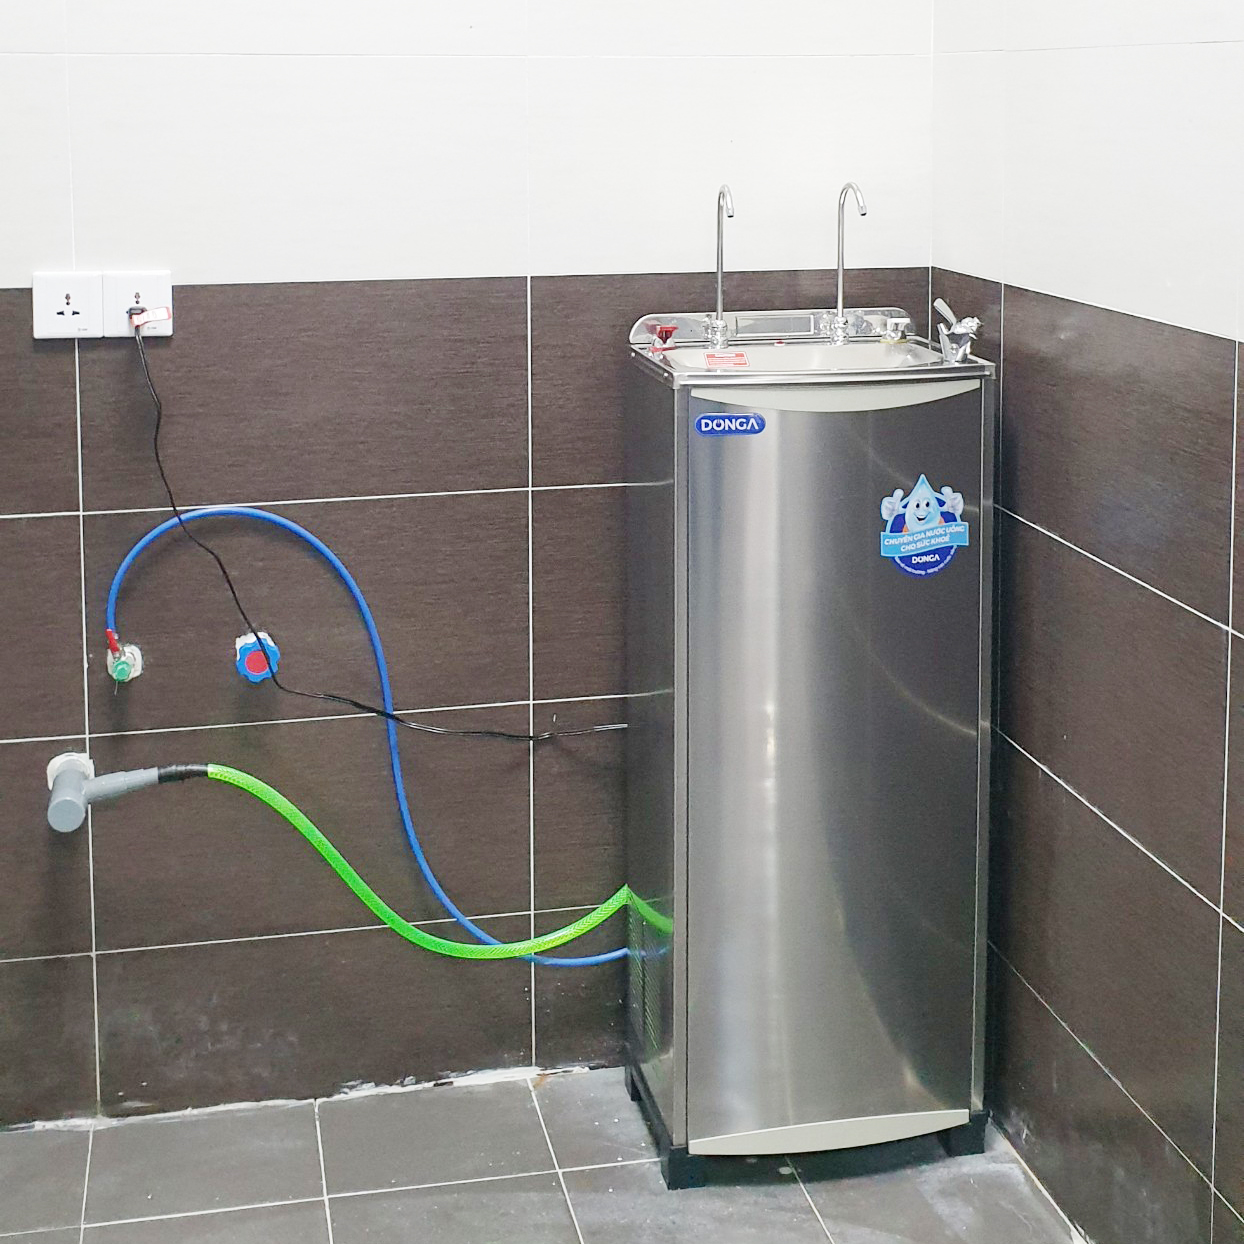 CÔNG TY TNHH MAY TINH LỢI sử dụng máy lọc nước nóng lạnh DONGA